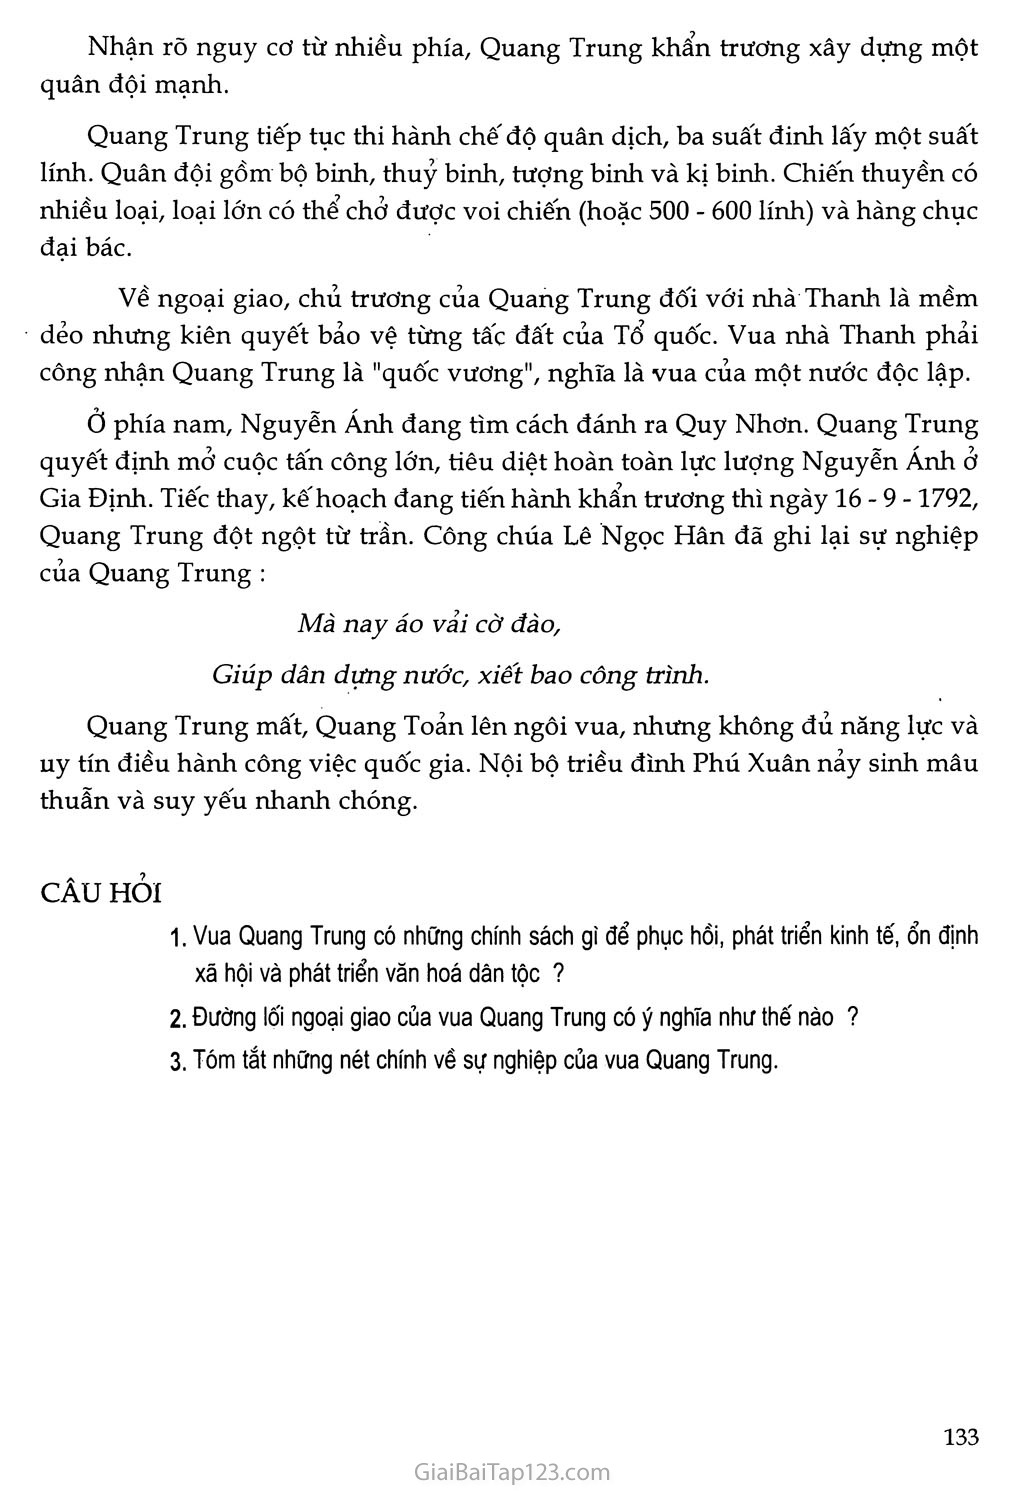 Bài 26 - Quang Trung xây dựng đất nước trang 3